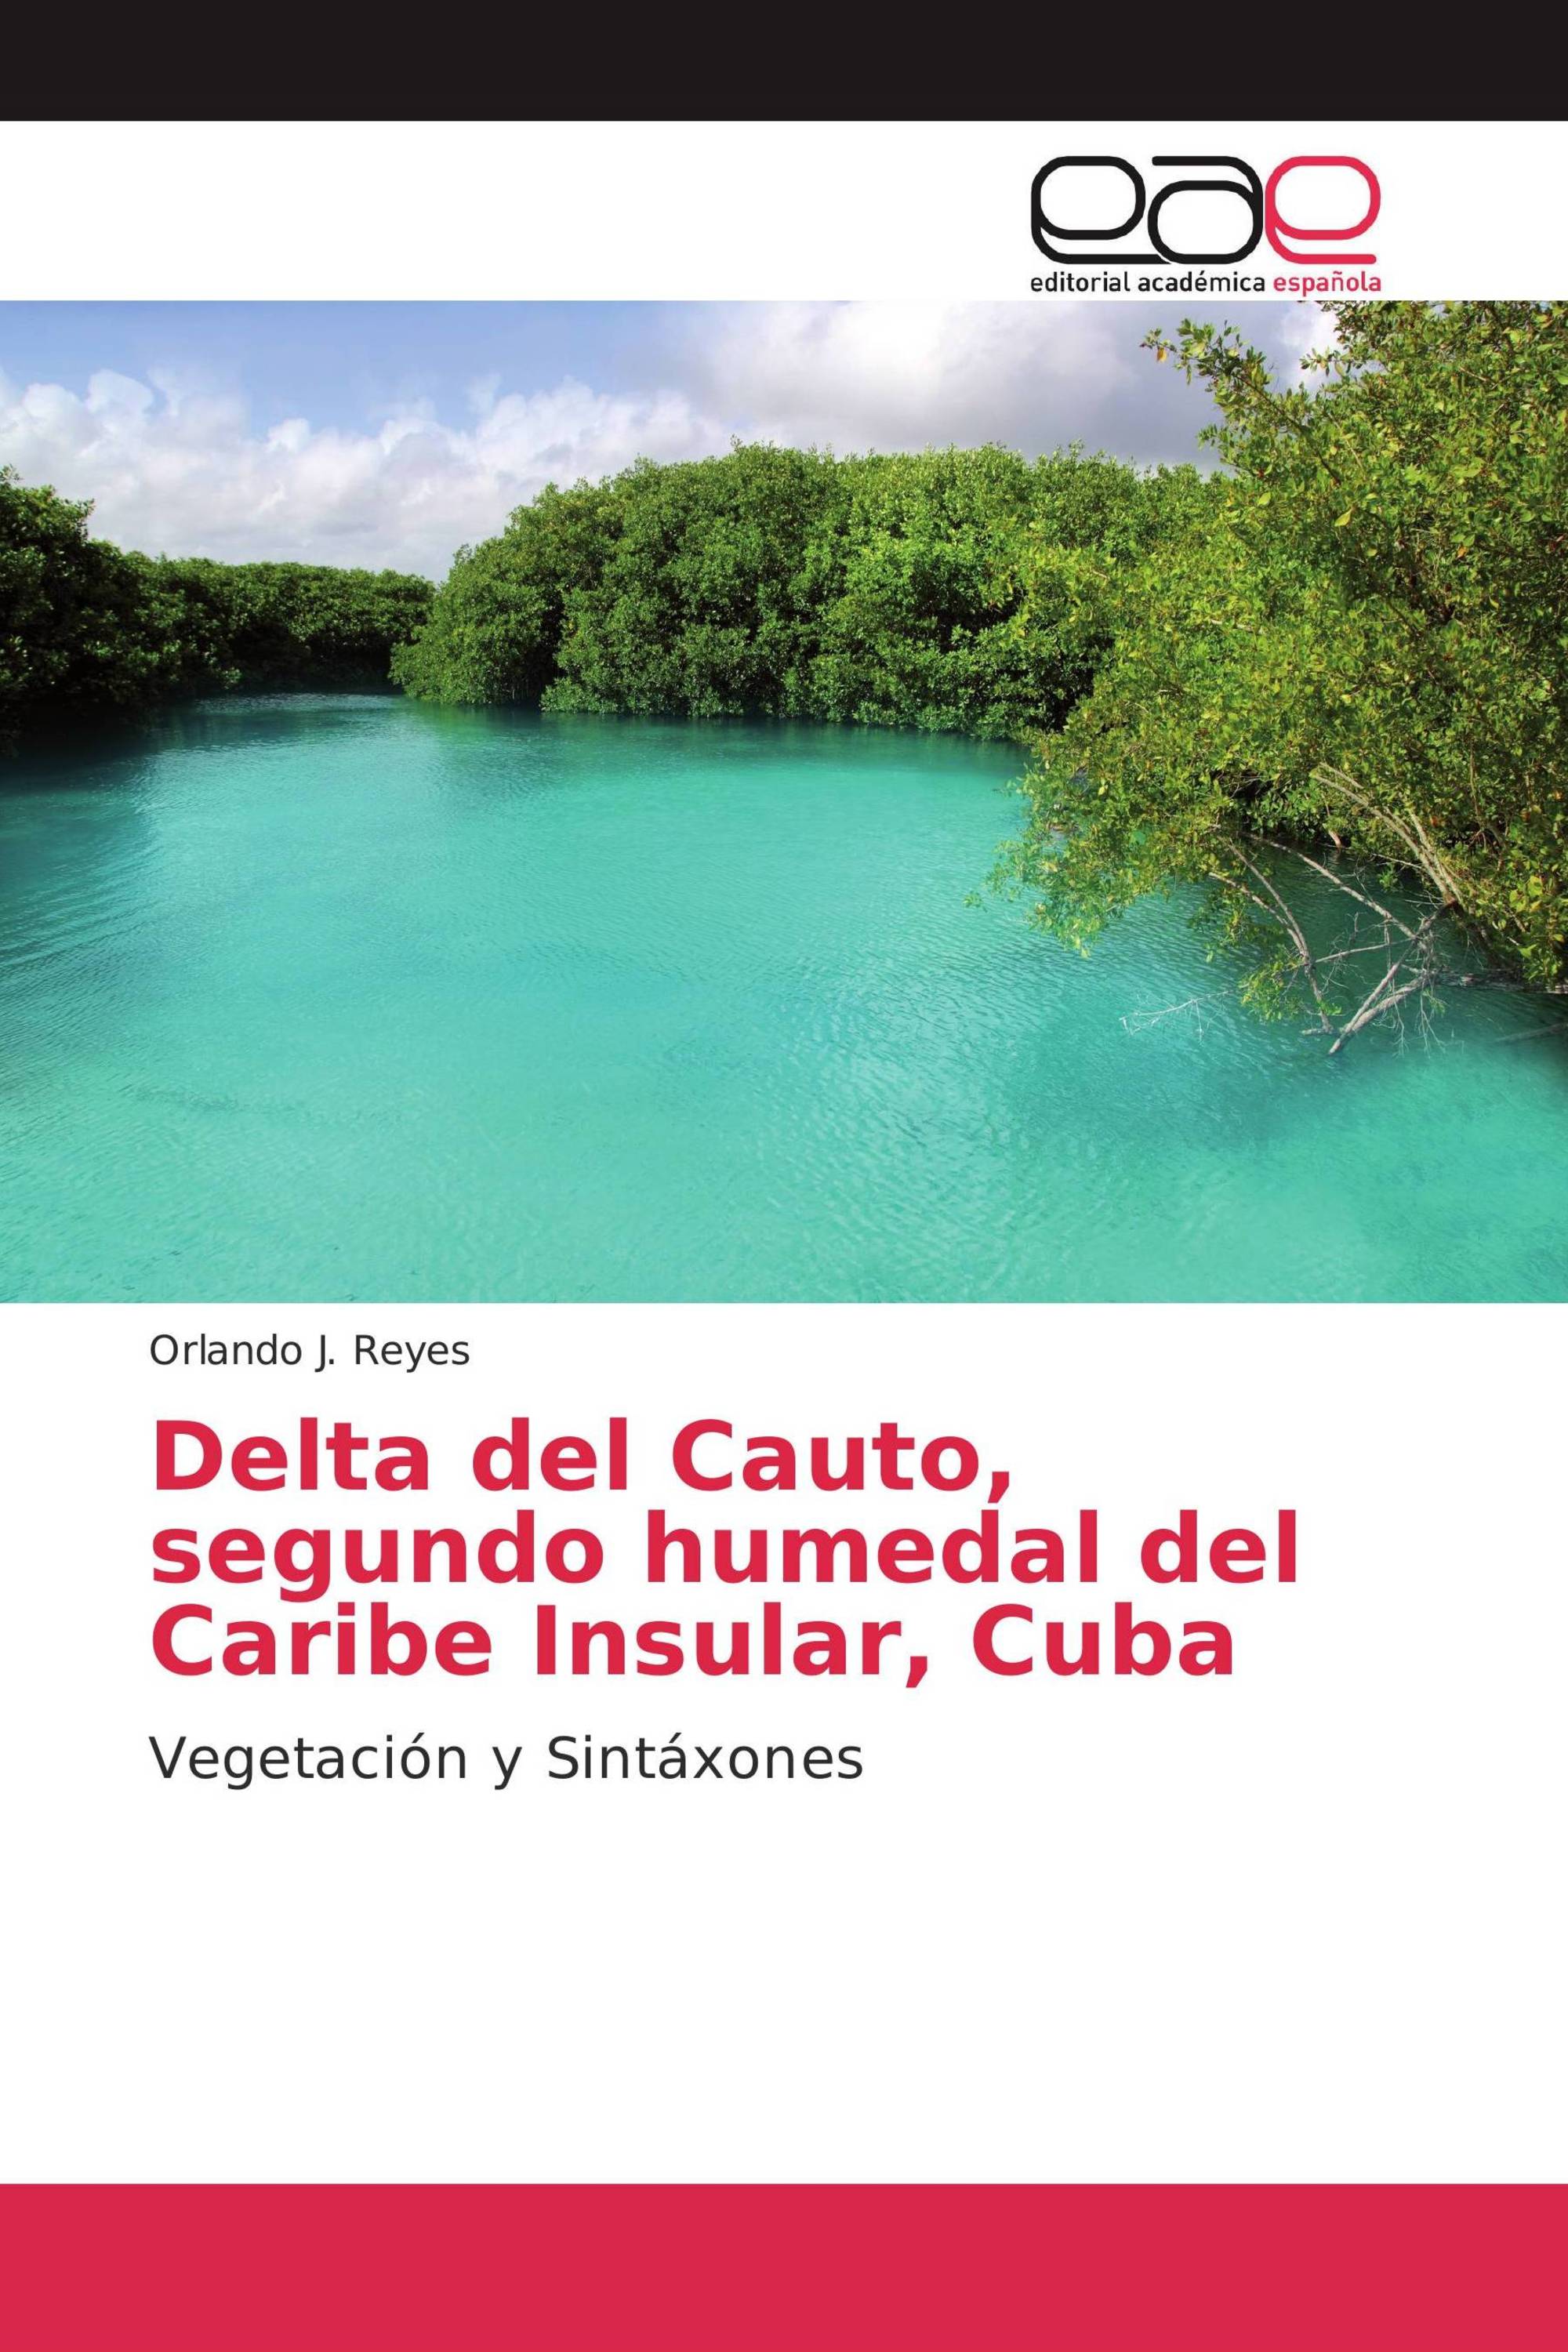 Delta del Cauto, segundo humedal del Caribe Insular, Cuba